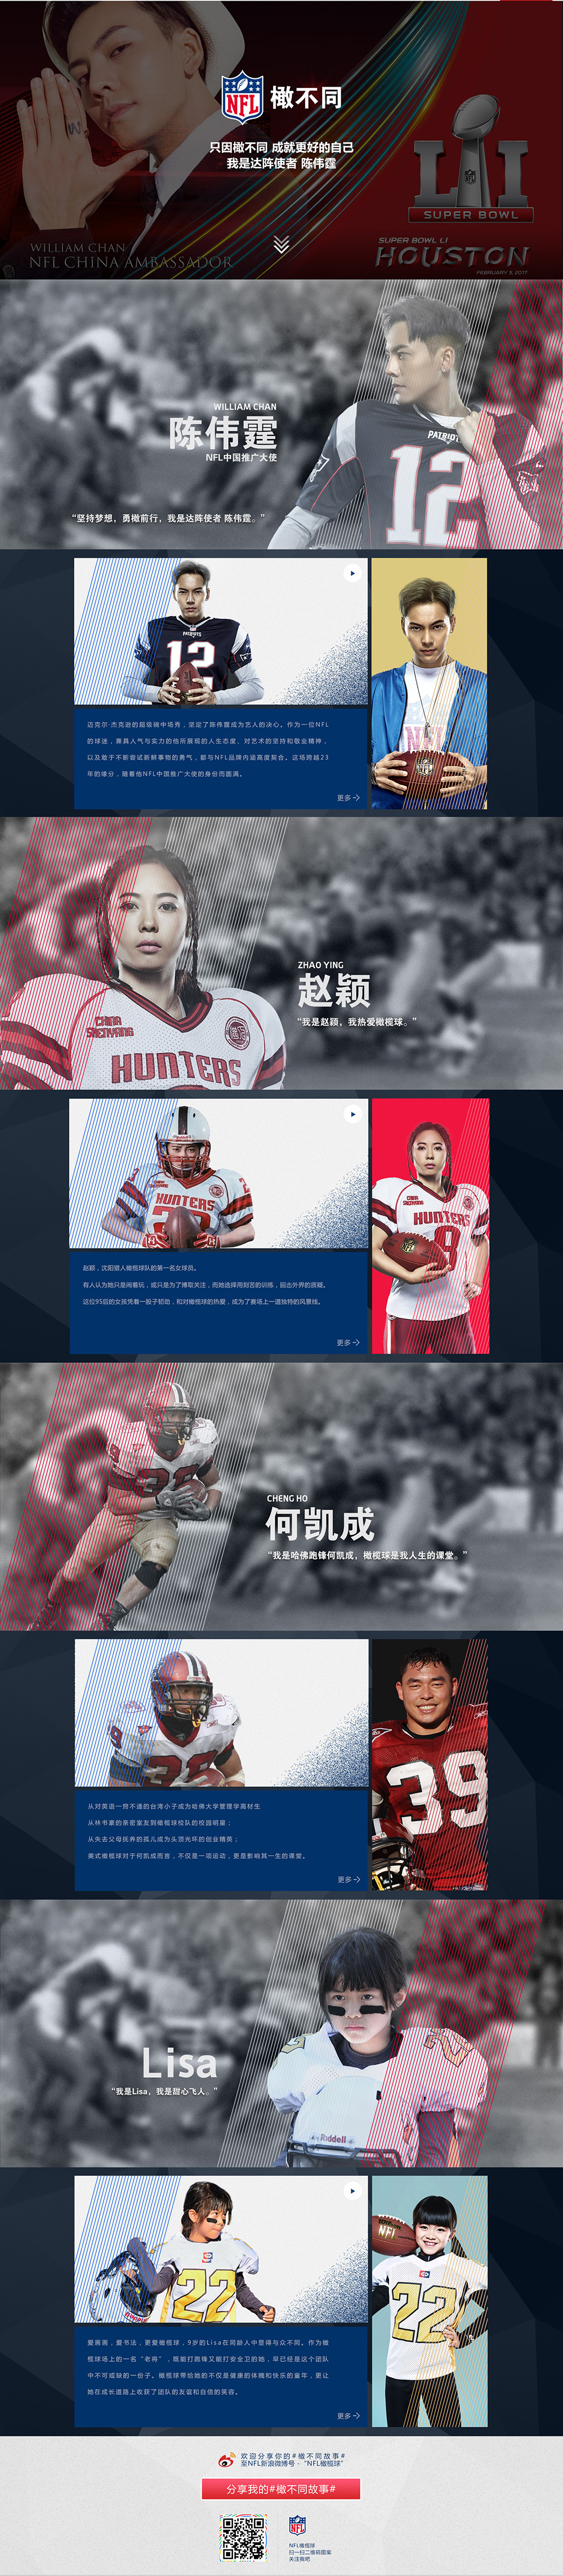 淘宝美工鼻尖美国橄榄球联盟NFL活动专题网页设计作品